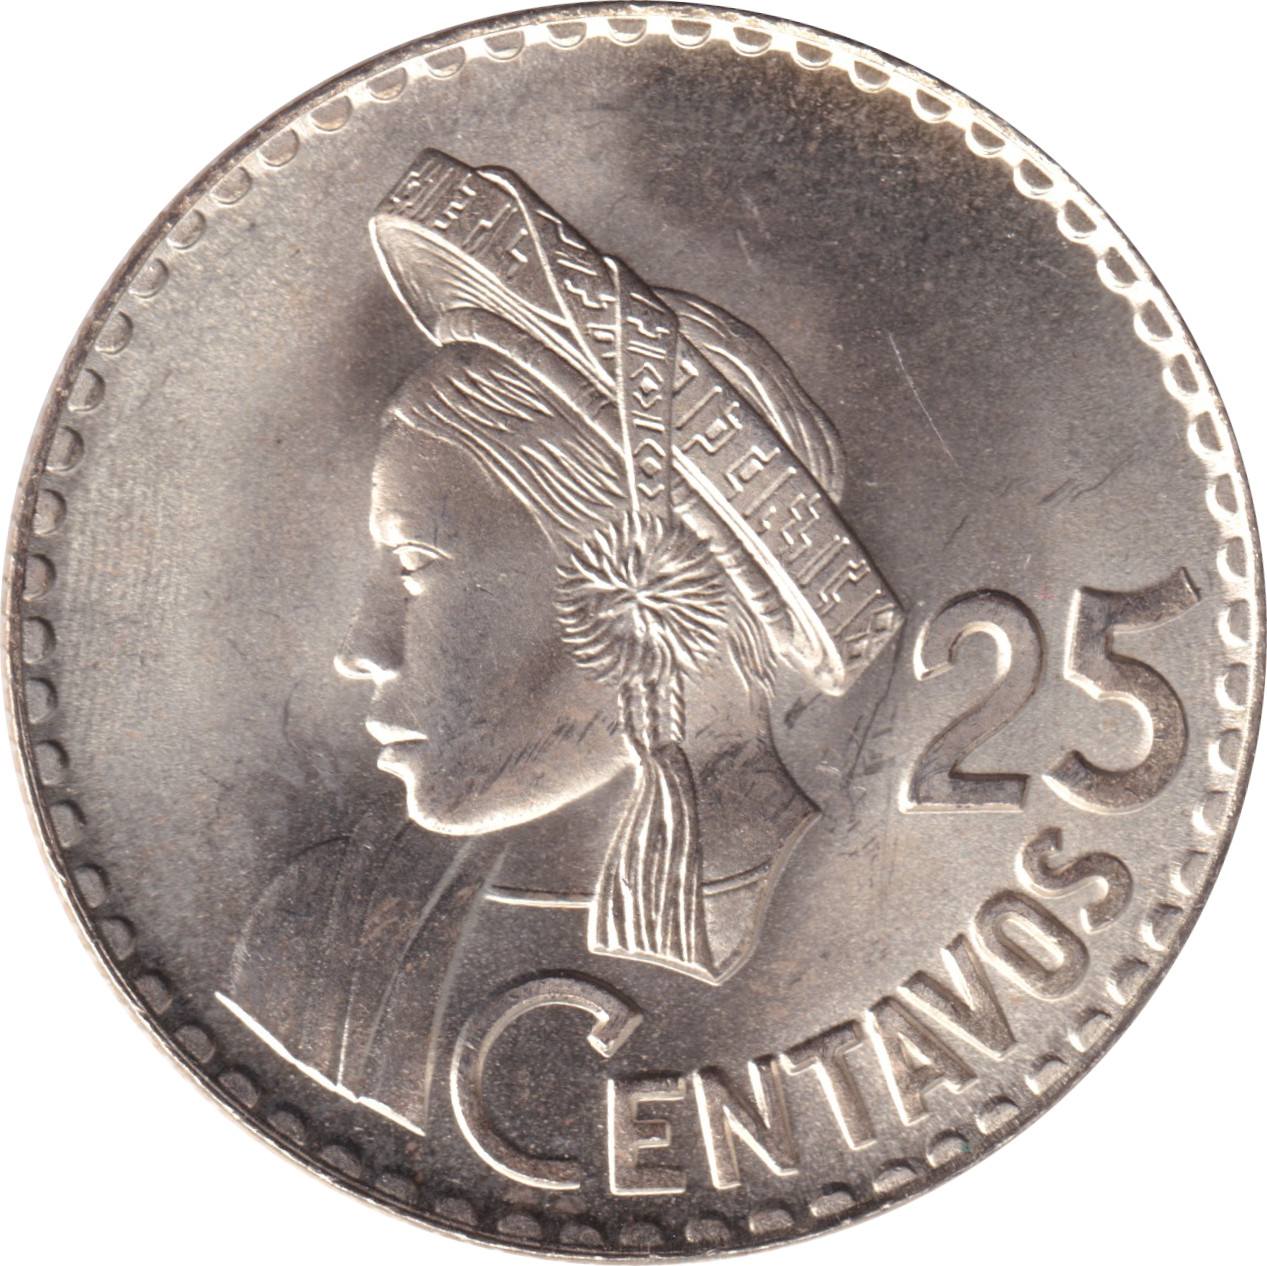 25 centimos - Emblème - Amérindien